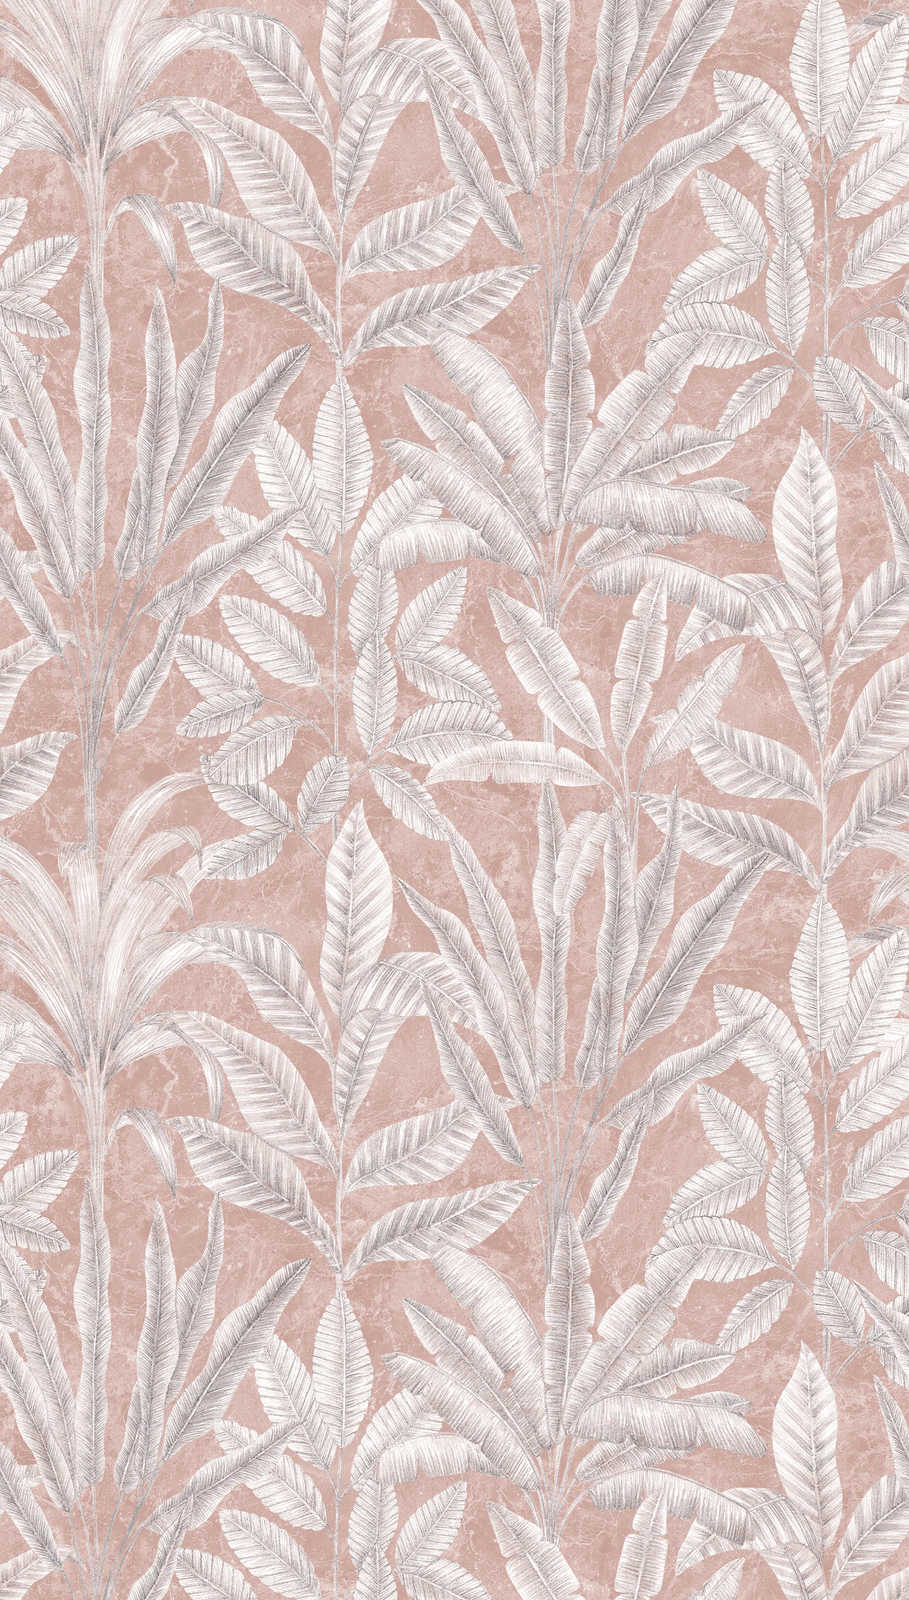             Papier peint intissé à grandes feuilles dans des tons clairs - rose, gris, blanc
        